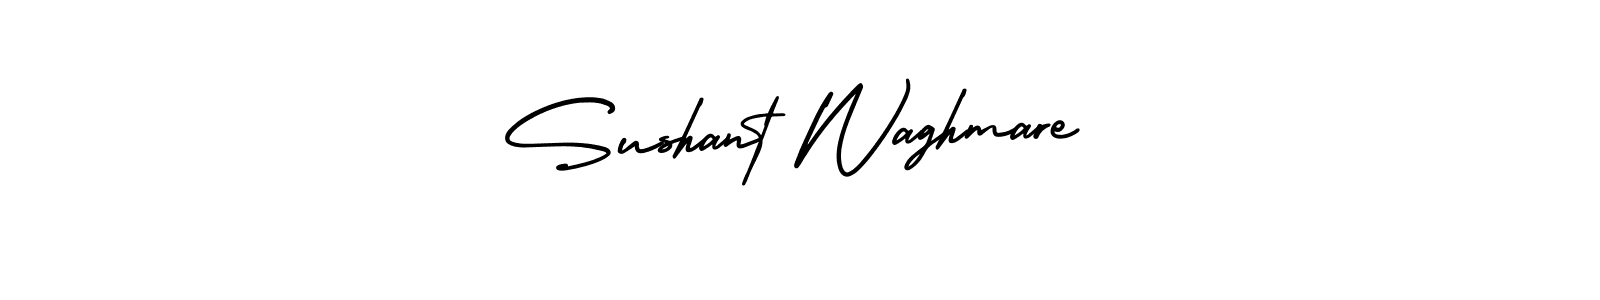 70+ Sushant Waghmare Name Signature Style Ideas | Creative E-Signature